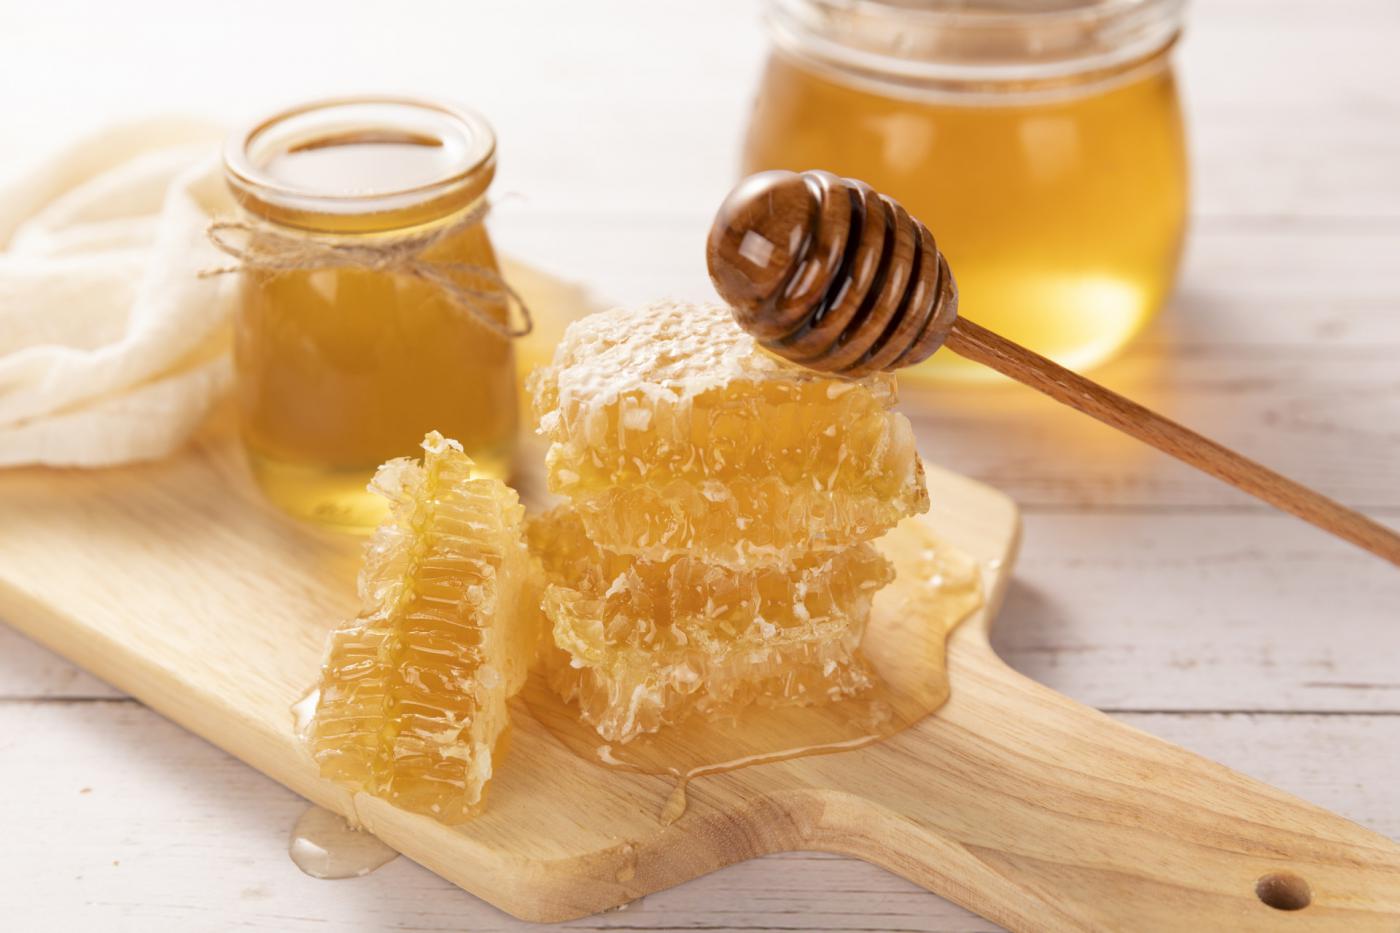 扬州蜂蜜制品检测,蜂蜜制品检测费用,蜂蜜制品检测机构,蜂蜜制品检测项目